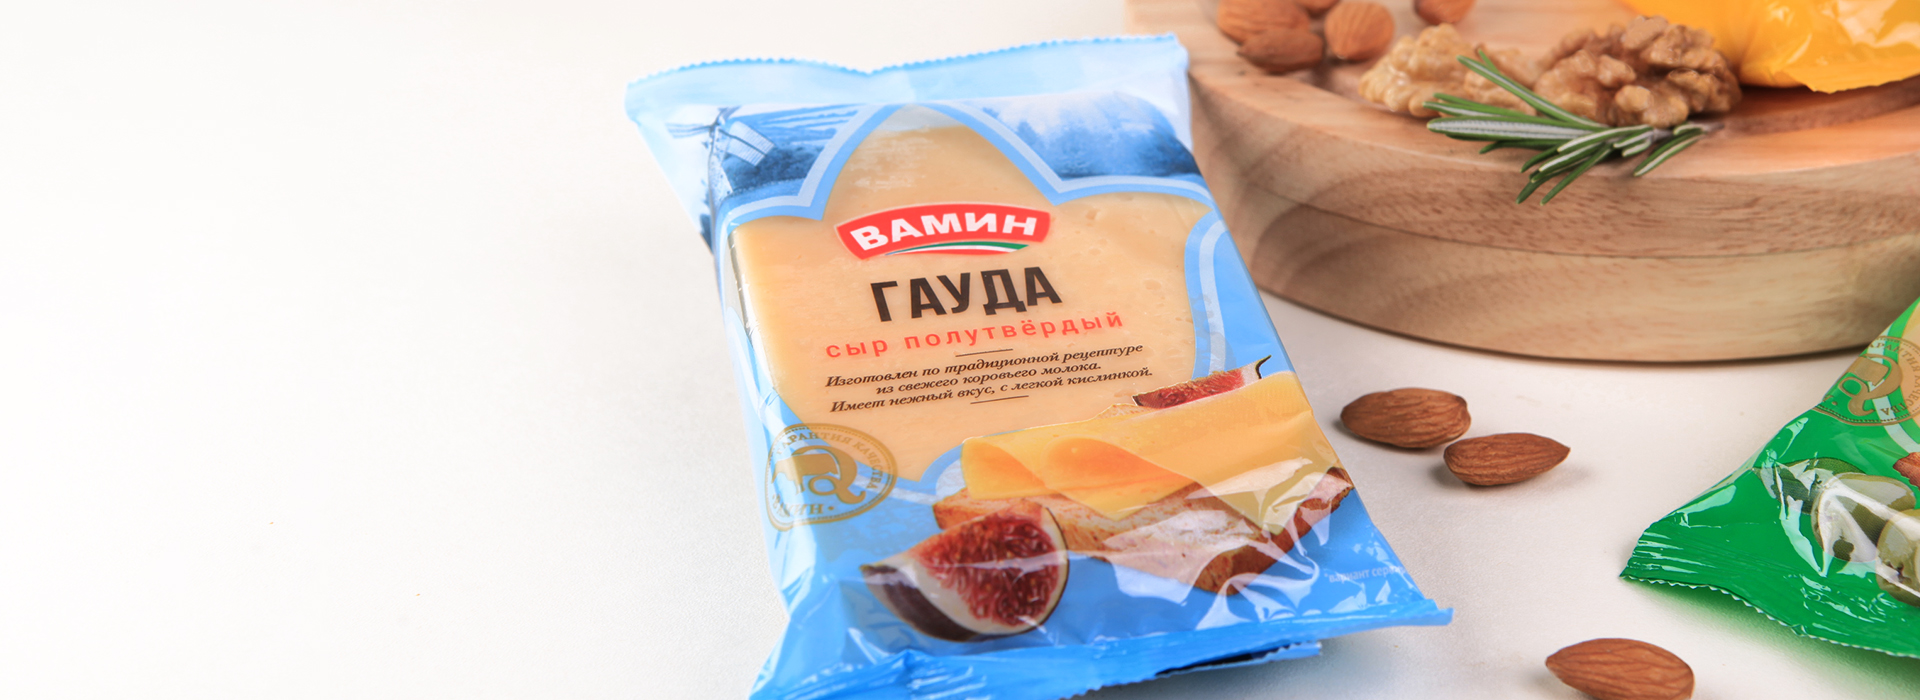 «Вамин» — ребрендинг сыров с татарским колоритом — A.STUDIO